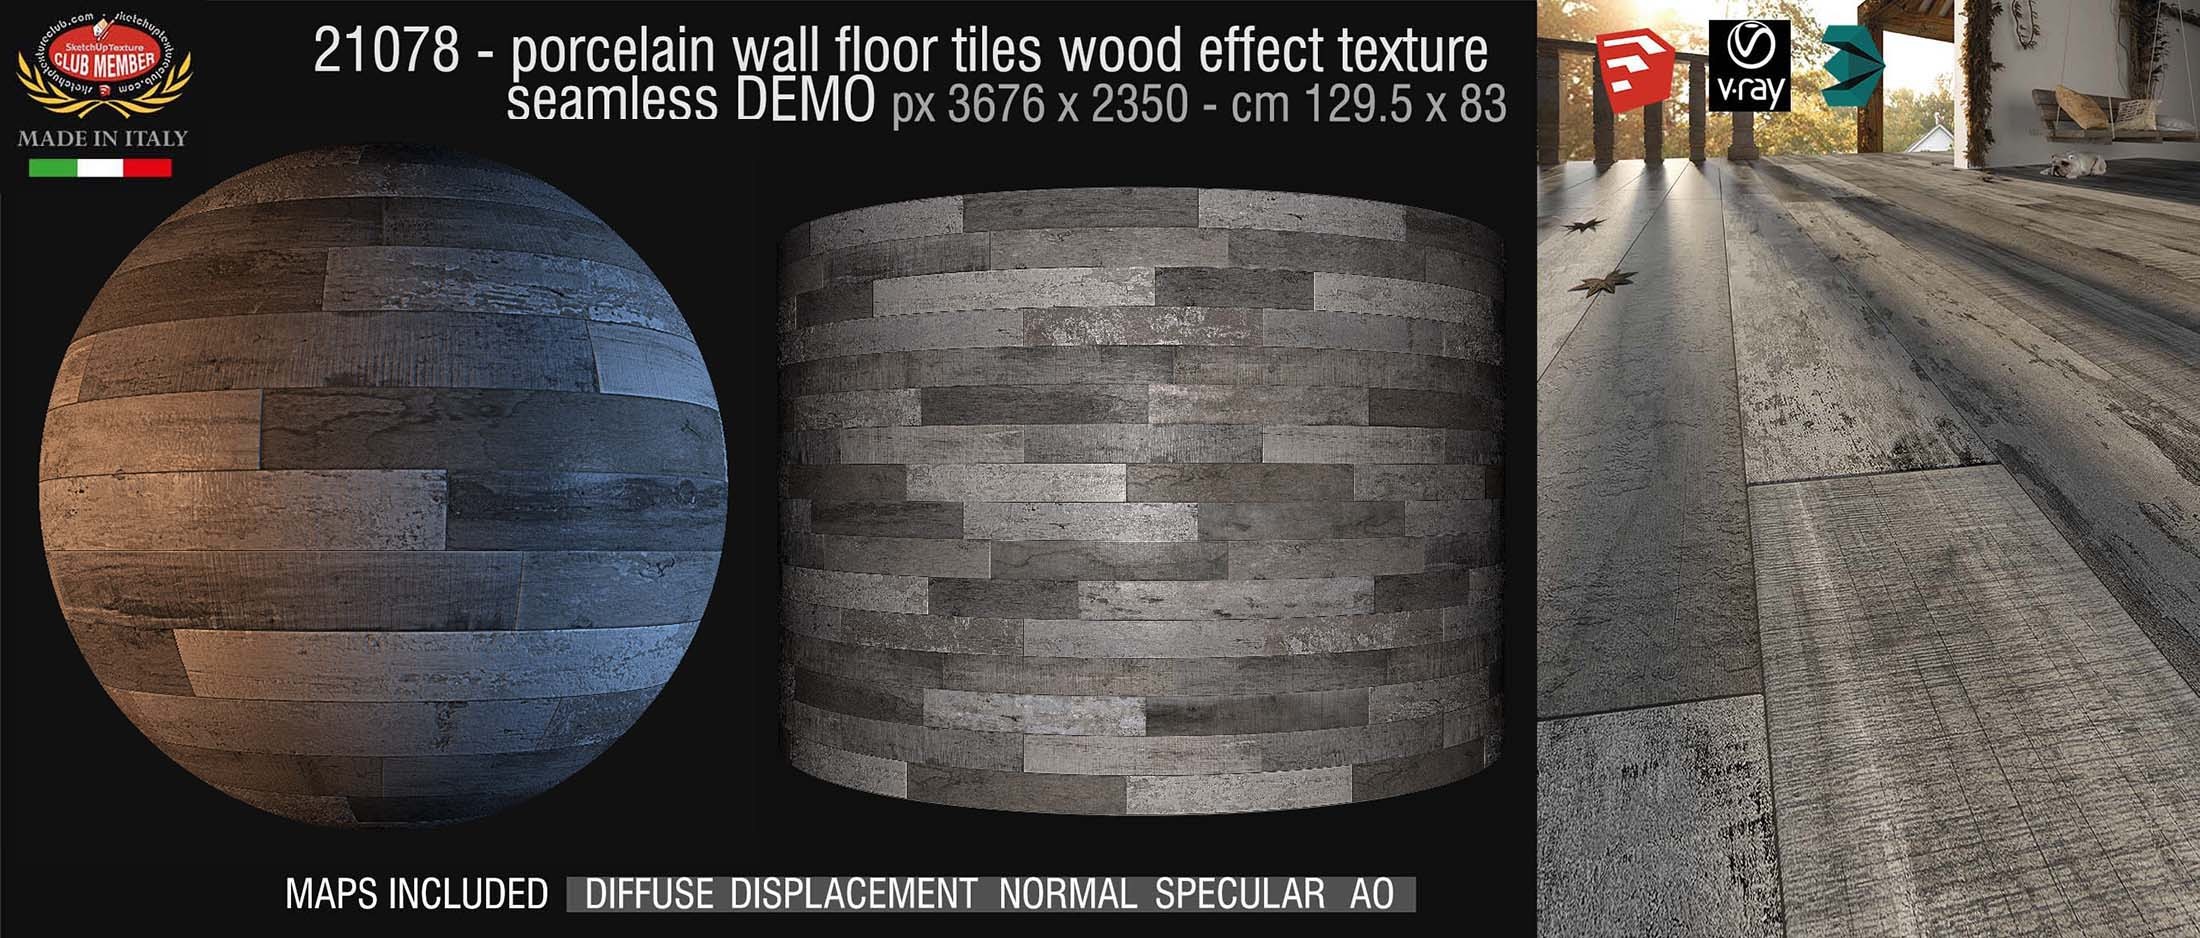 21078 Porcelain wall floor tiles wood effect PBR texture seamless DEMO